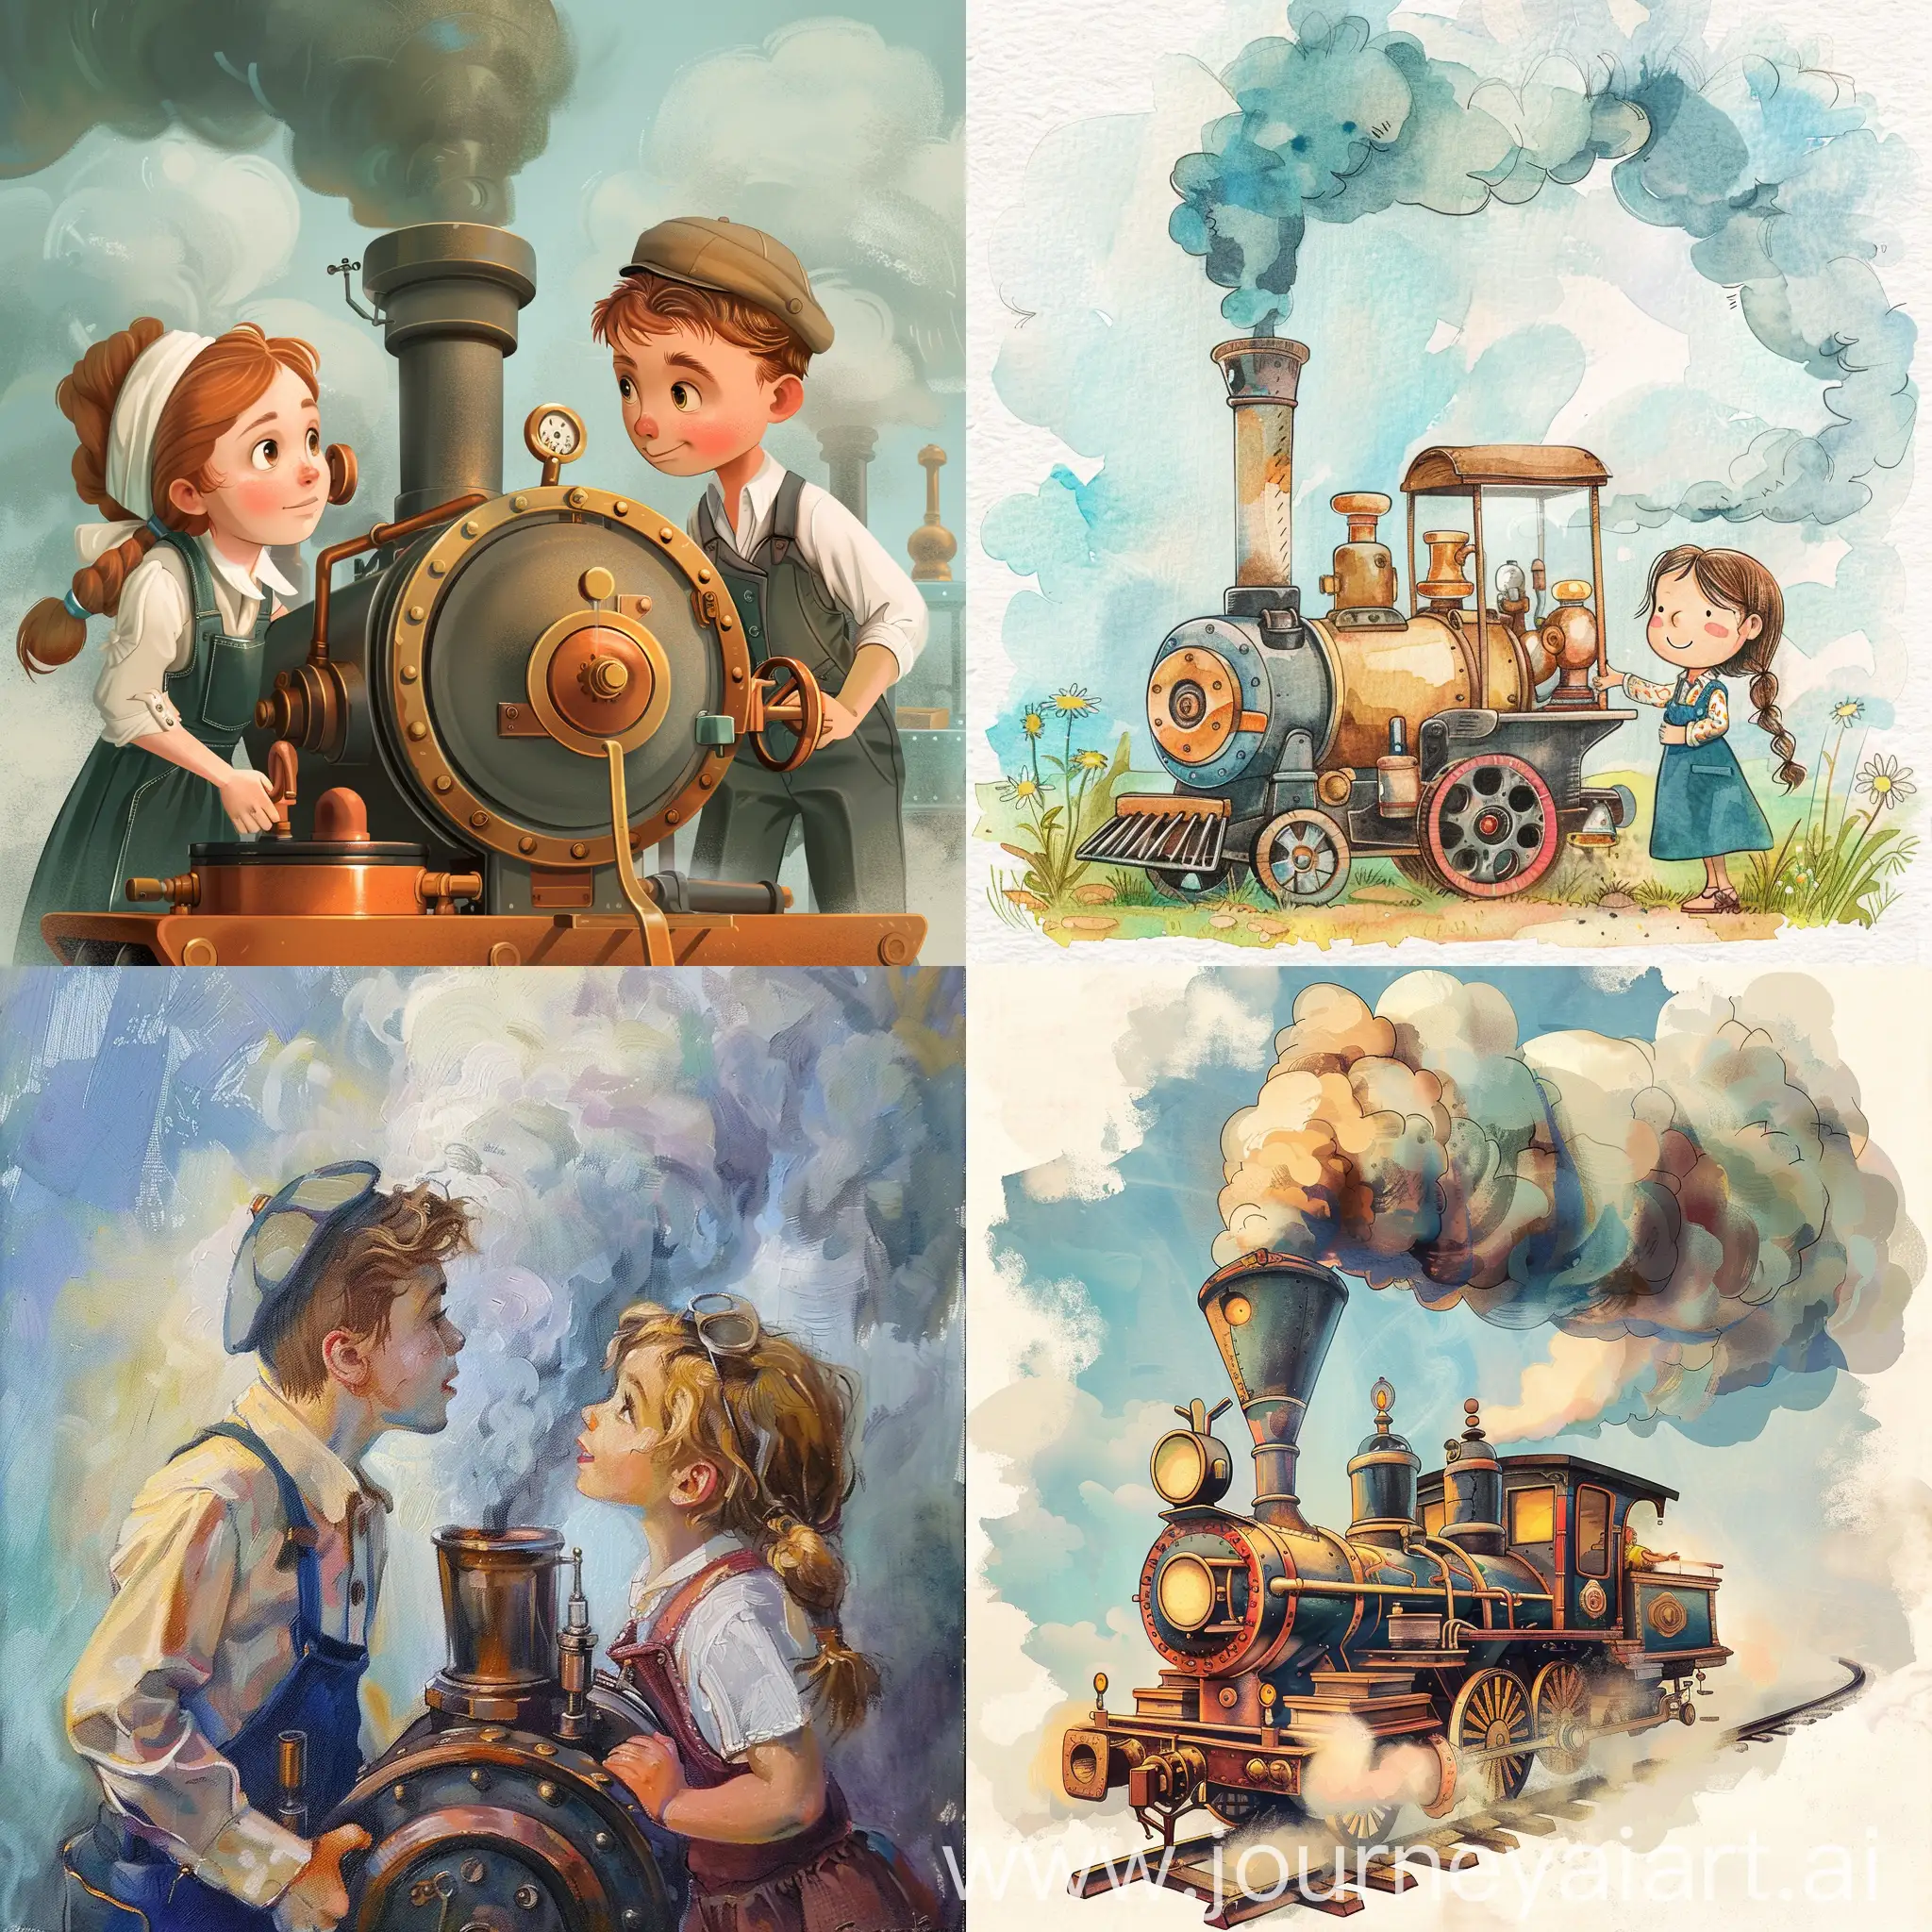 Введение в мир Steam для детей

Что такое Steam и зачем он нужен?
Почему Steam популярен среди детей?
Как использовать Steam безопасно и весело. An illustration. --ar 16:9 